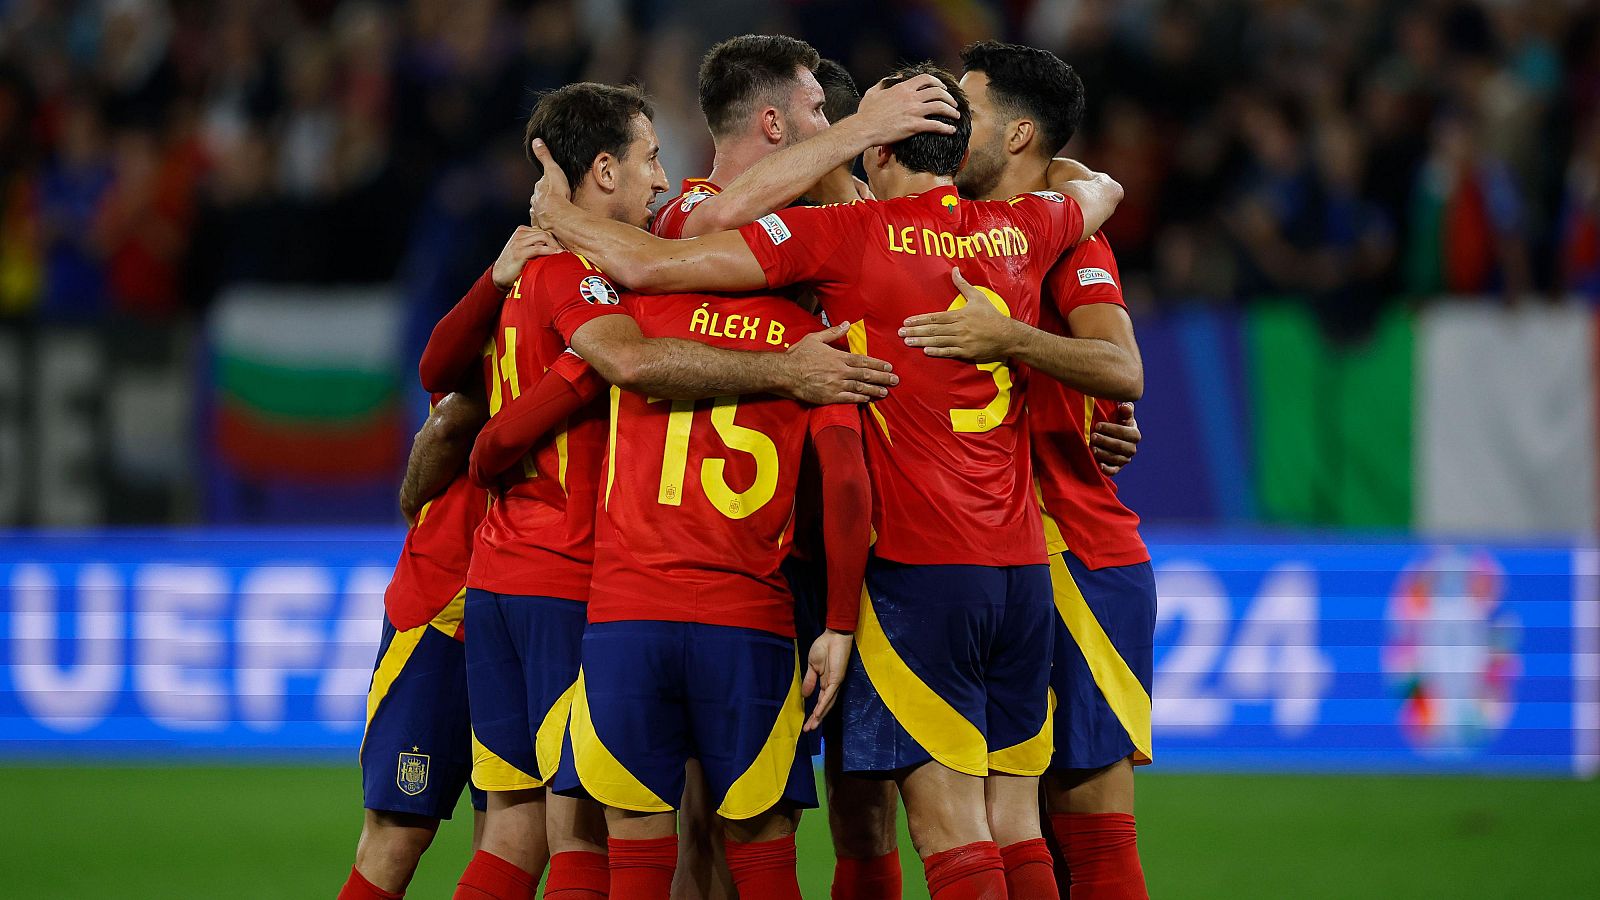 La selección española es considerada la más fiable defensivamente según las estadísticas